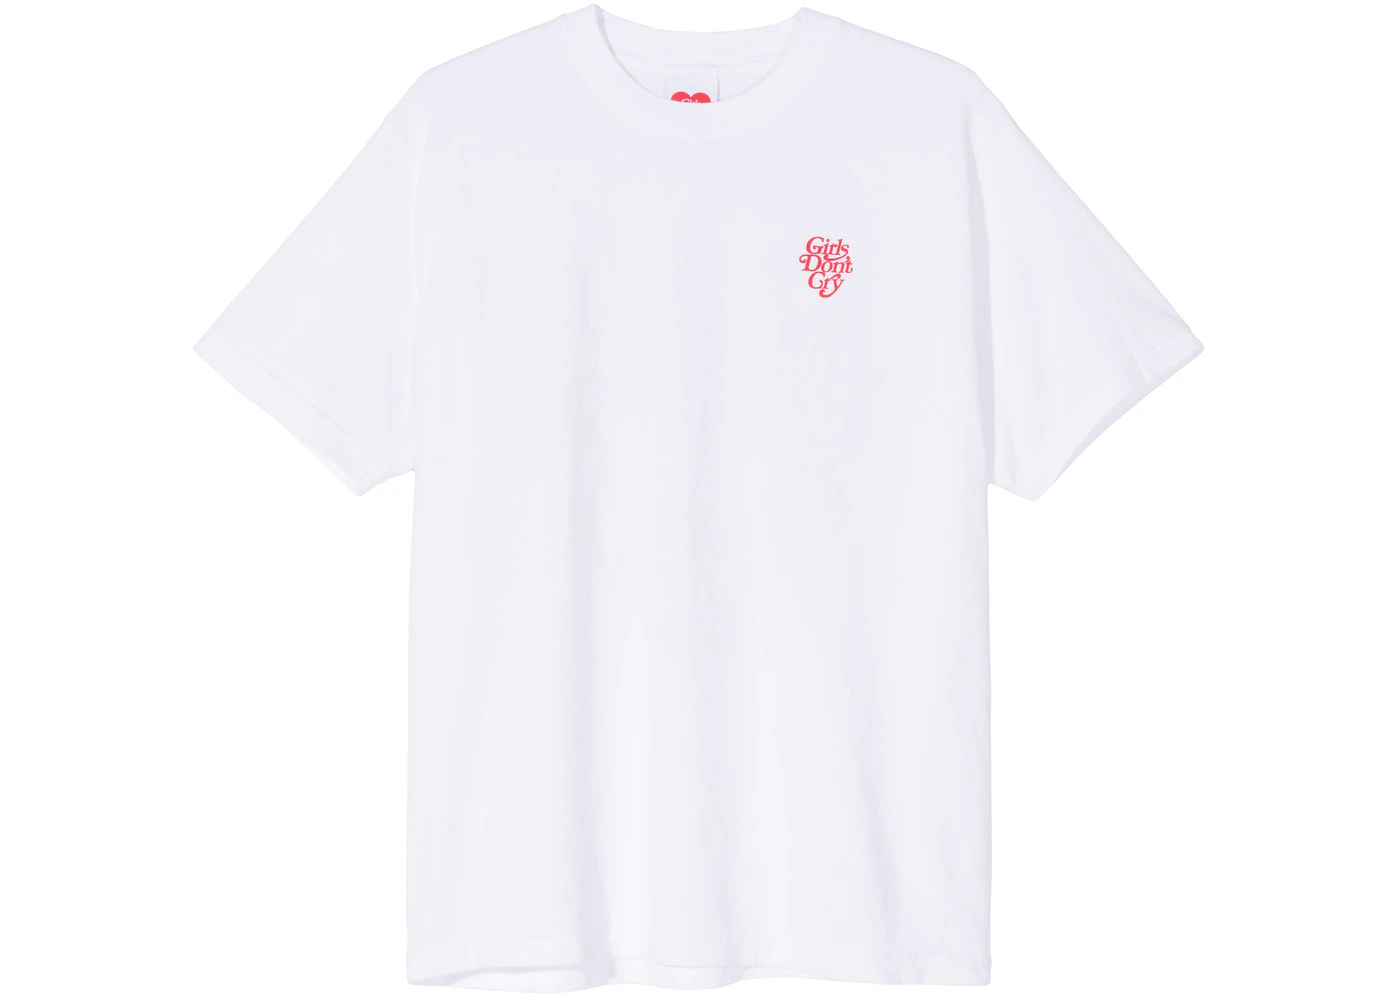 XLサイズ Girls Don't Cry LOGO T-SHIRT ホワイト39tcryTシャツ